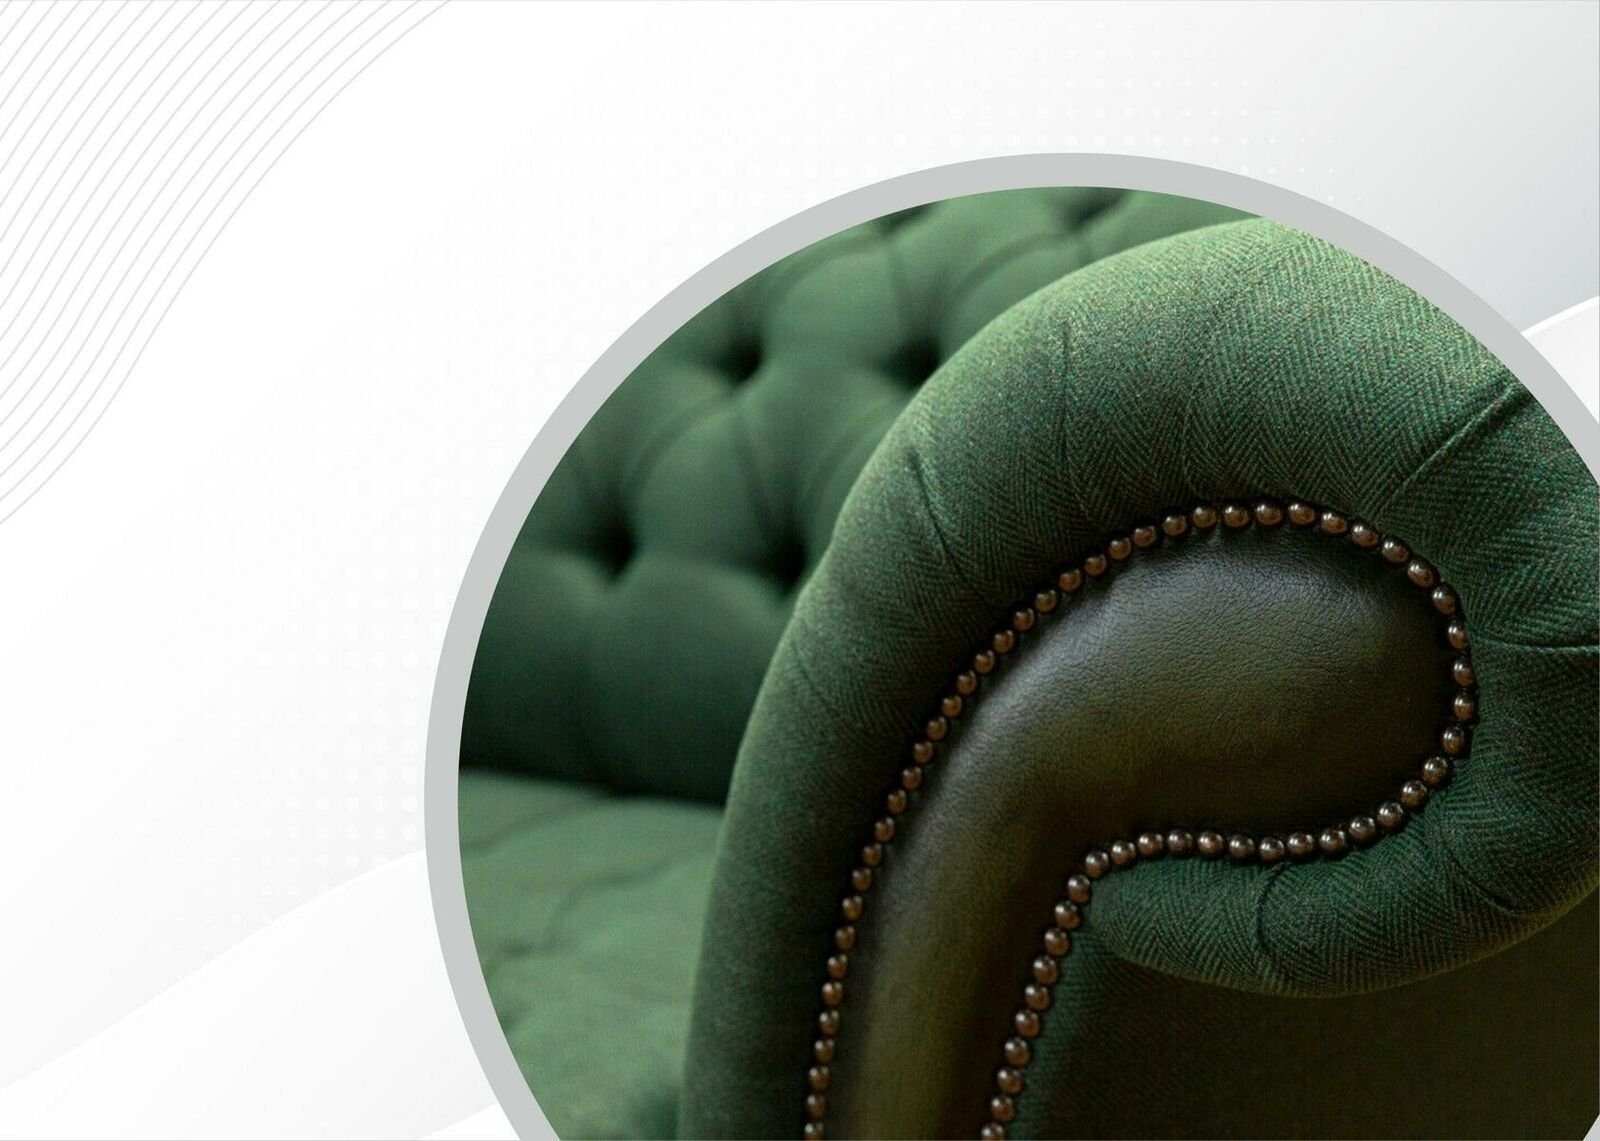 Polstermöbel, Grüner Europe Made Chesterfield Sofa in JVmoebel Chesterfield-Sofa Dreisitzer Neue